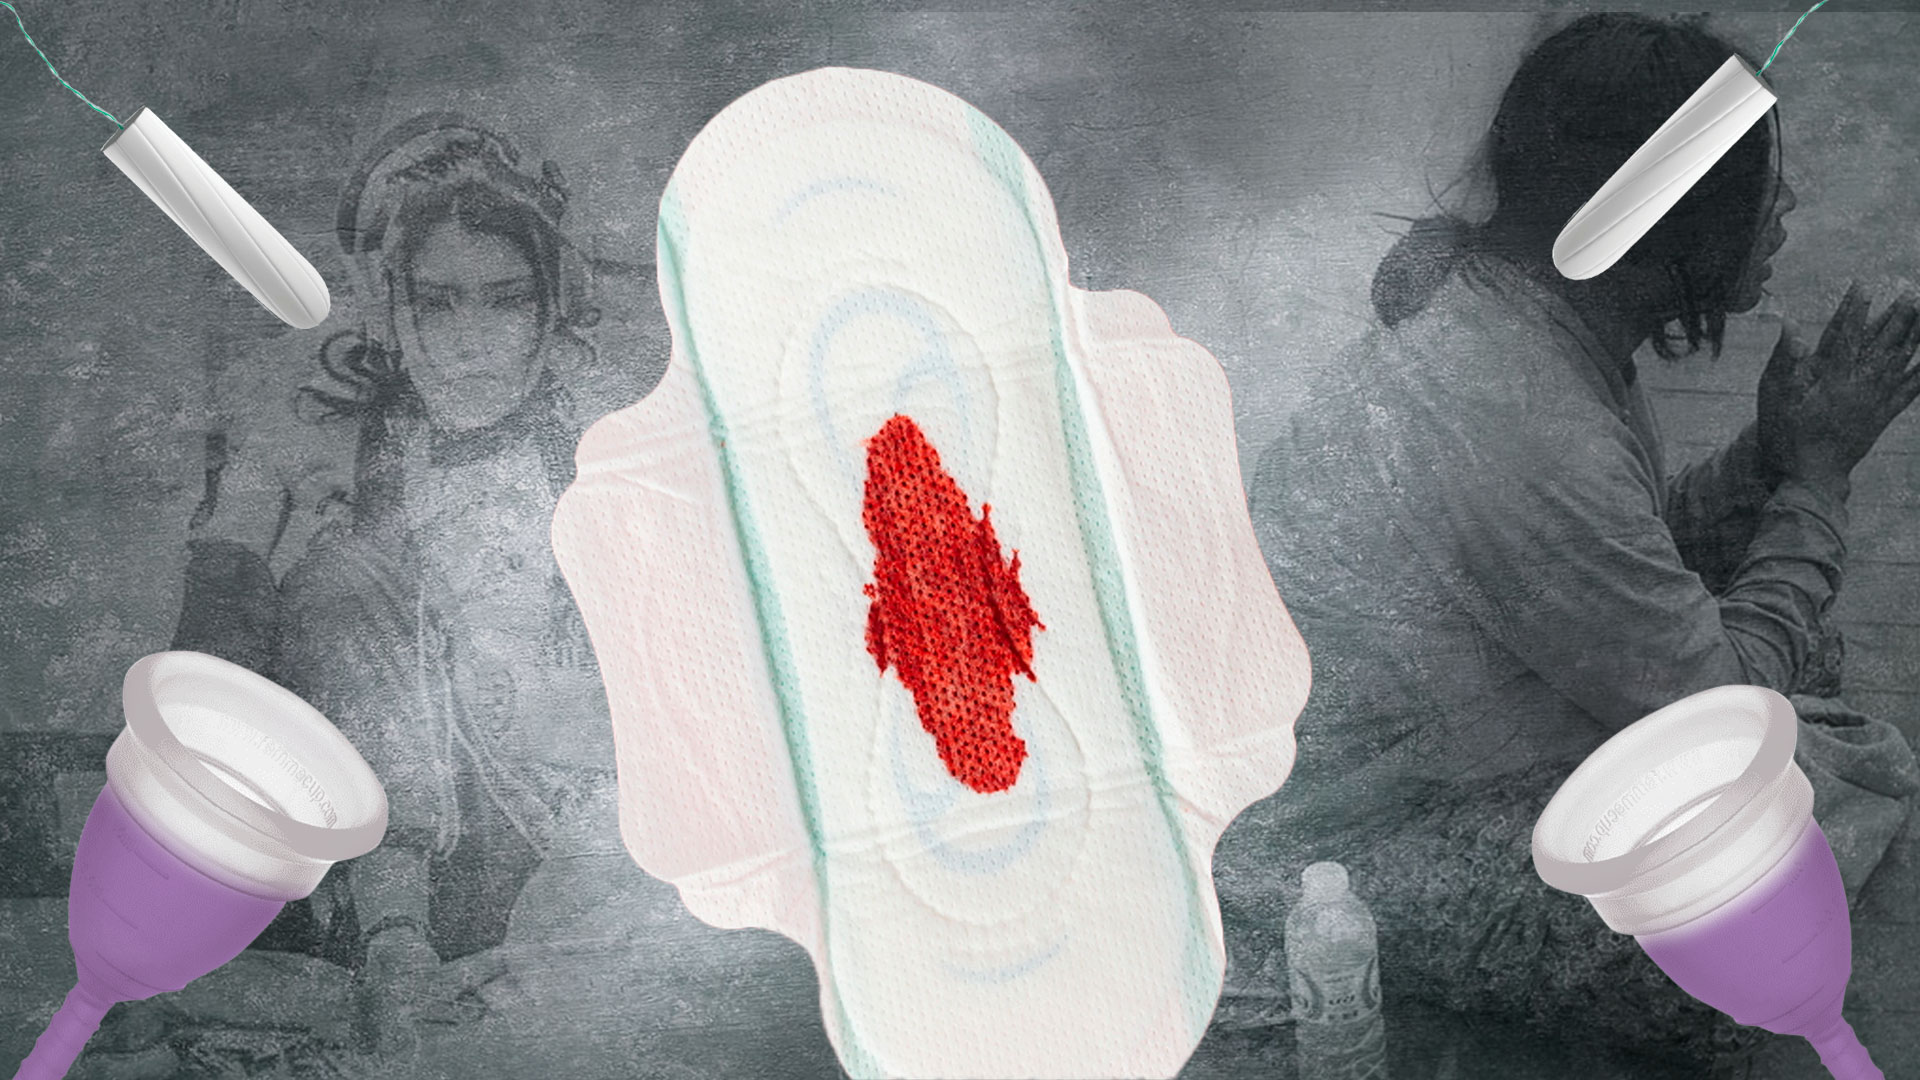 Muchas personas menstruantes en condición de habitabilidad de calle narran como han tenido que llegar a usar trapos para poder atender su experiencia menstrual. Ilustración Infobae Colombia-Jesús Áviles